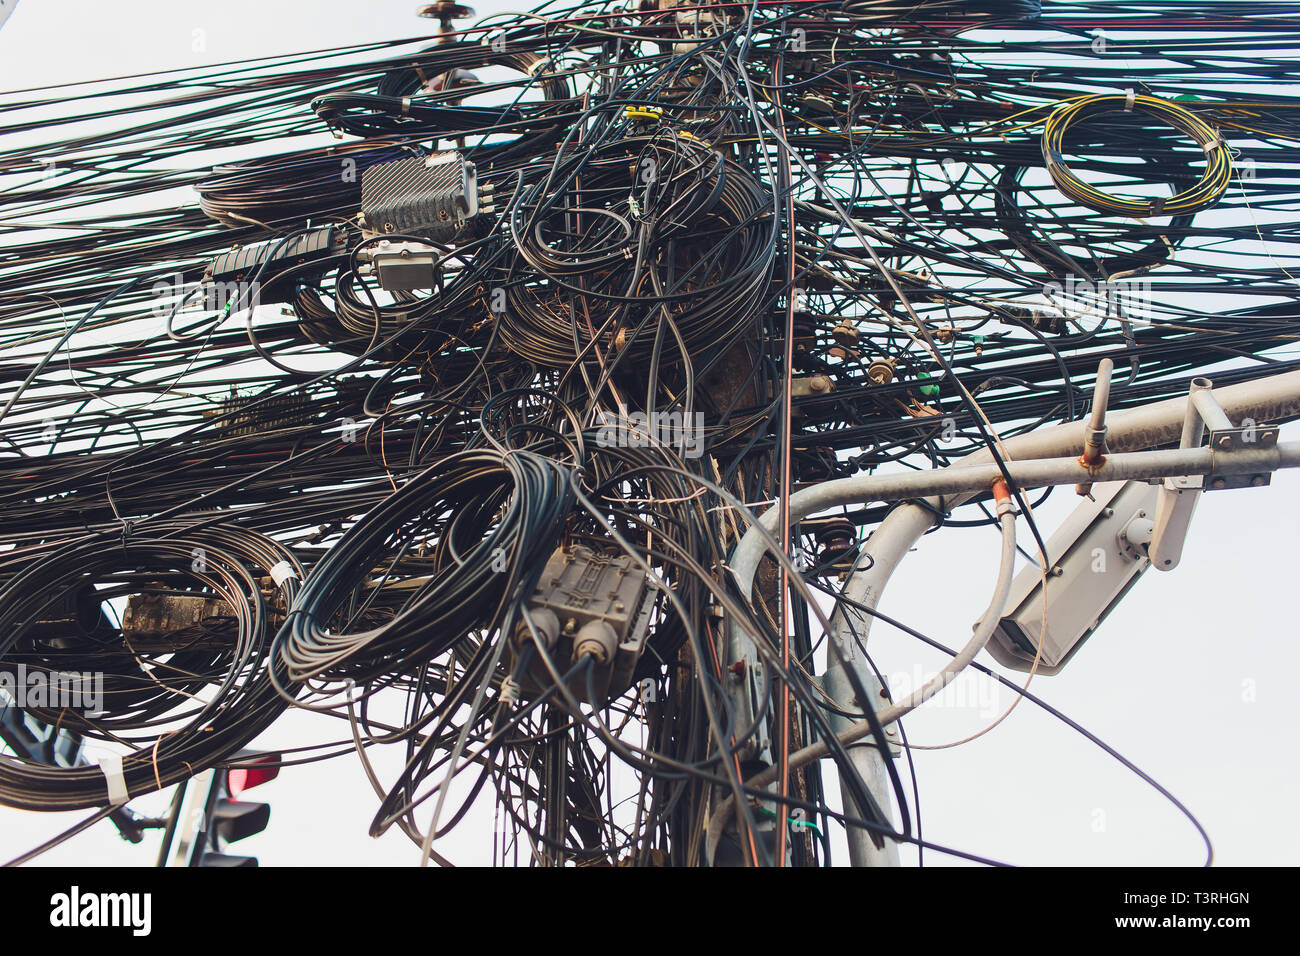 Crazy Desordenado Caos De Cables Cables En Postes De Electricidad